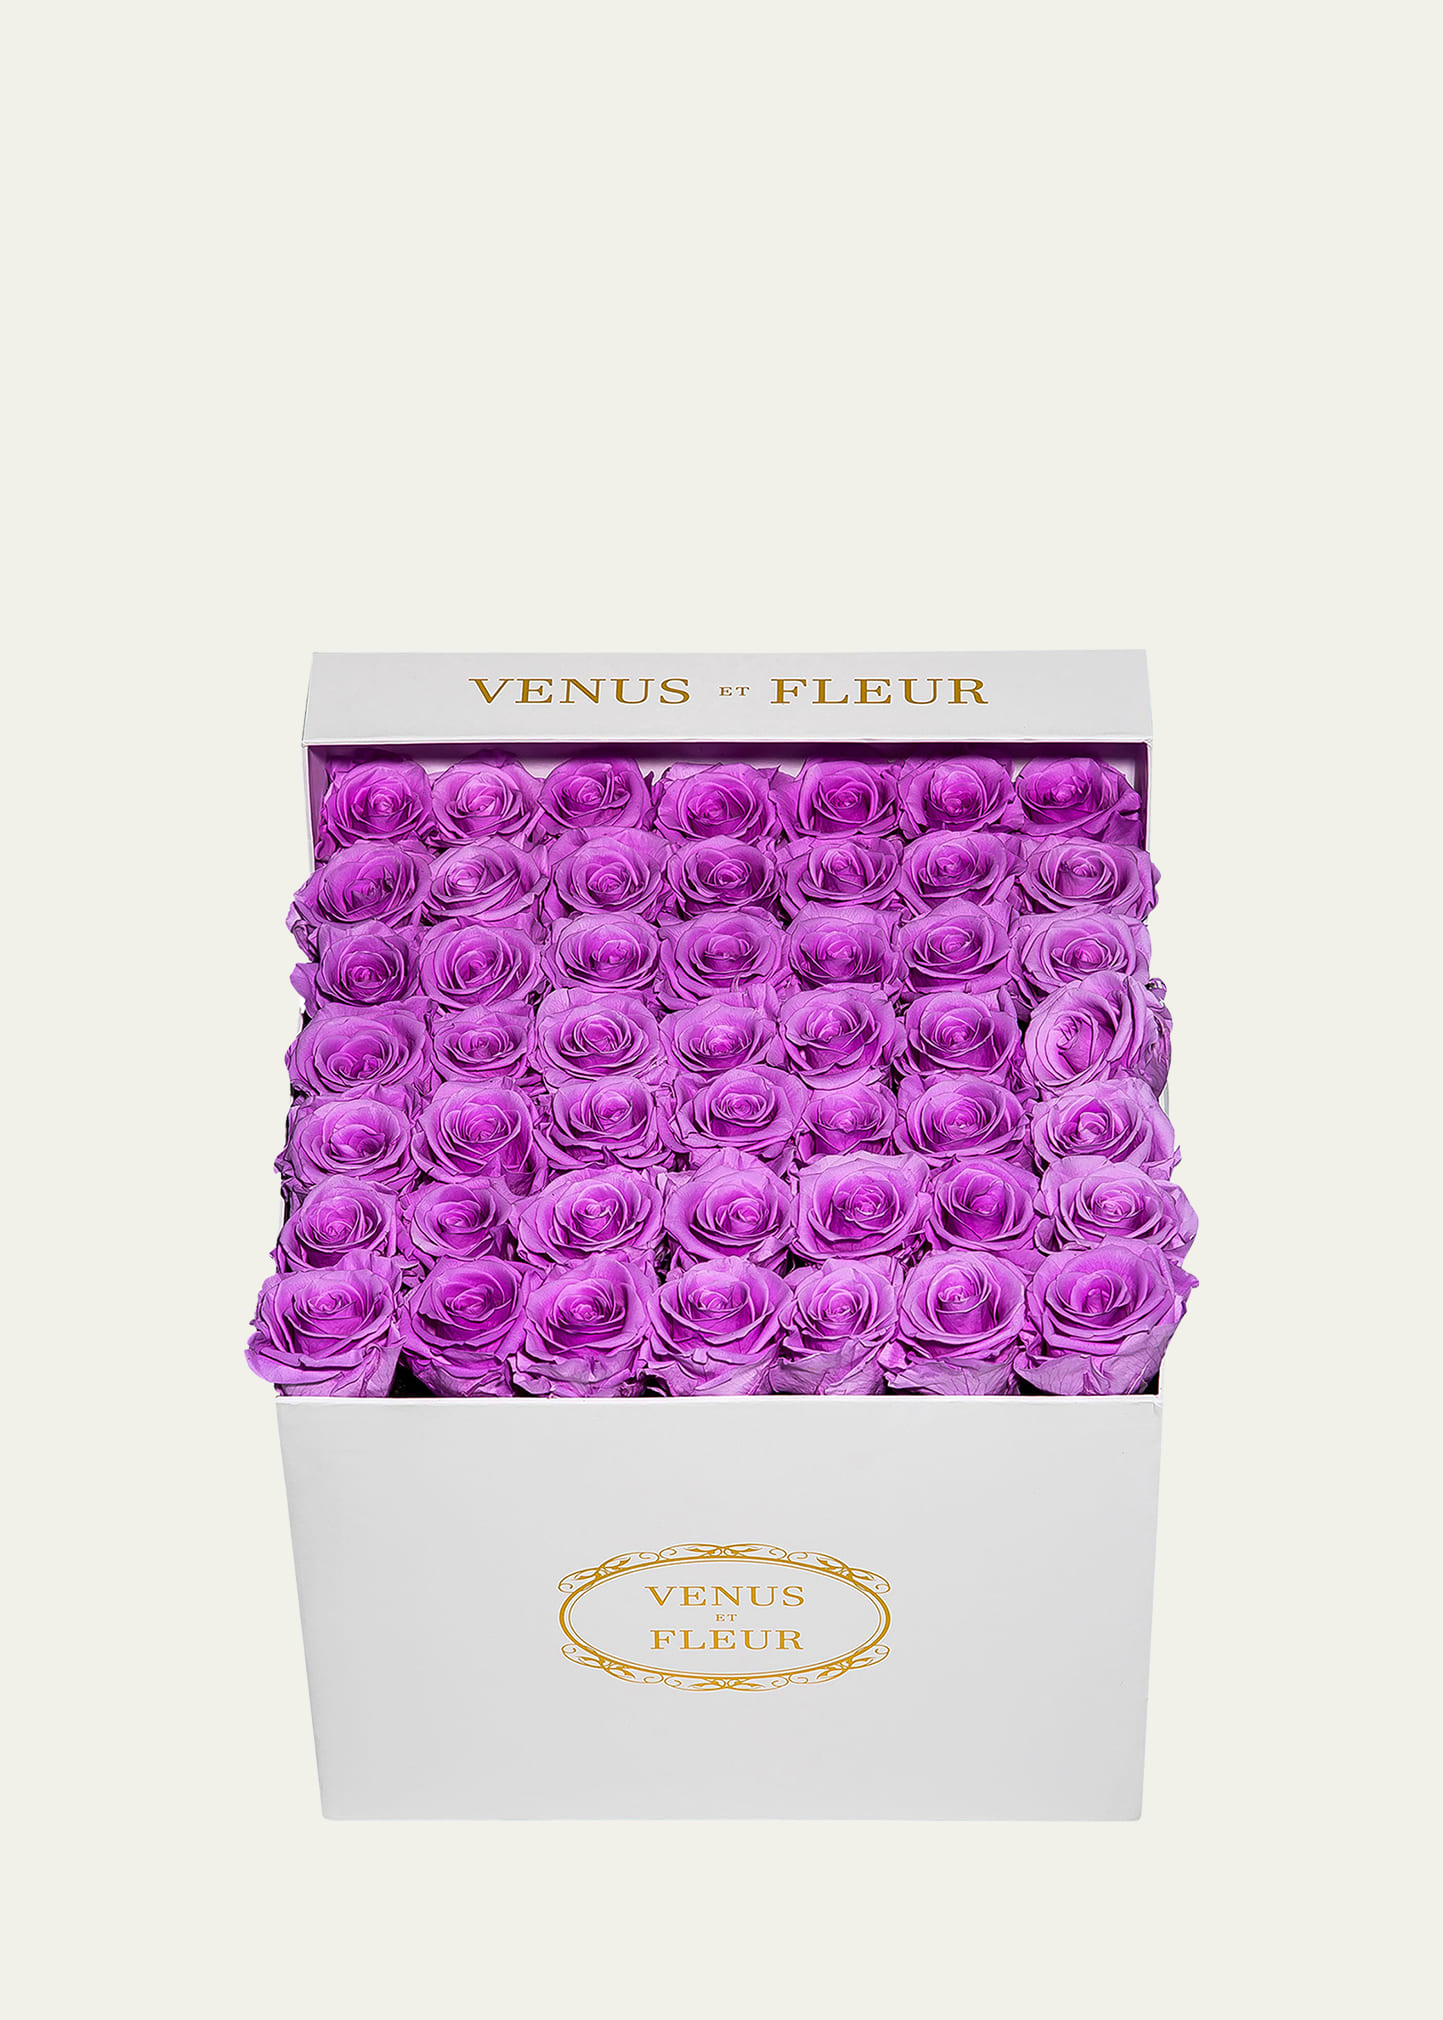 Venus Et Fleur Classic Large Square Rose Box In Brown